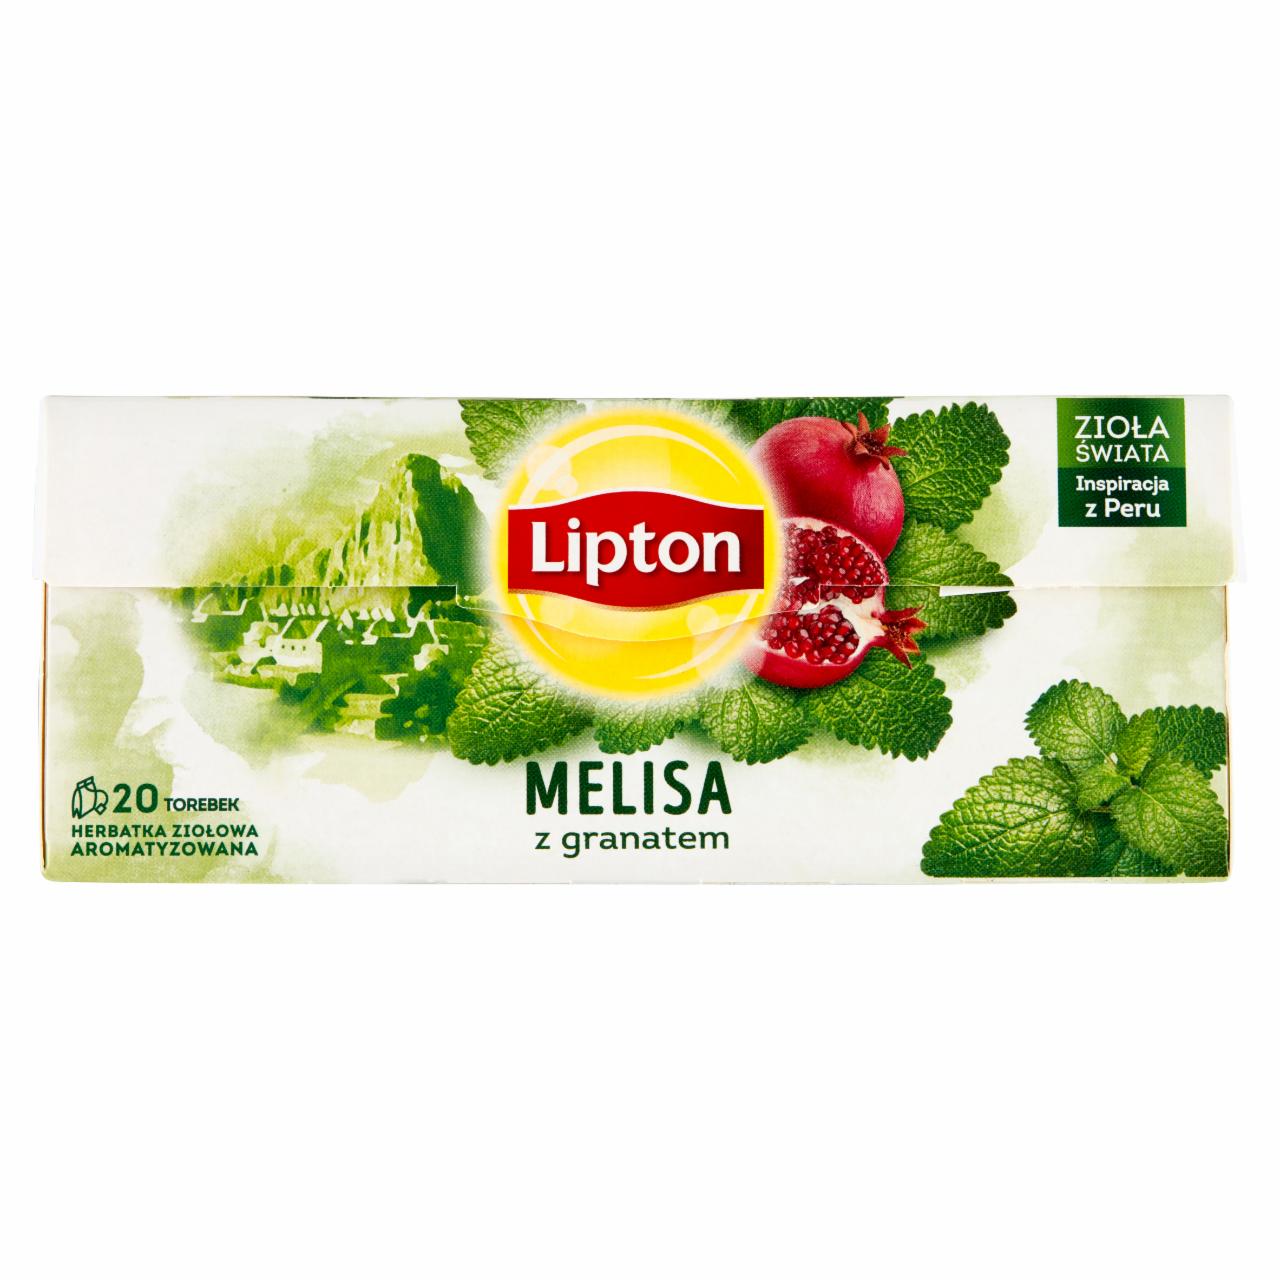 Zdjęcia - Lipton Herbatka ziołowa aromatyzowana melisa z granatem 24 g (20 torebek)